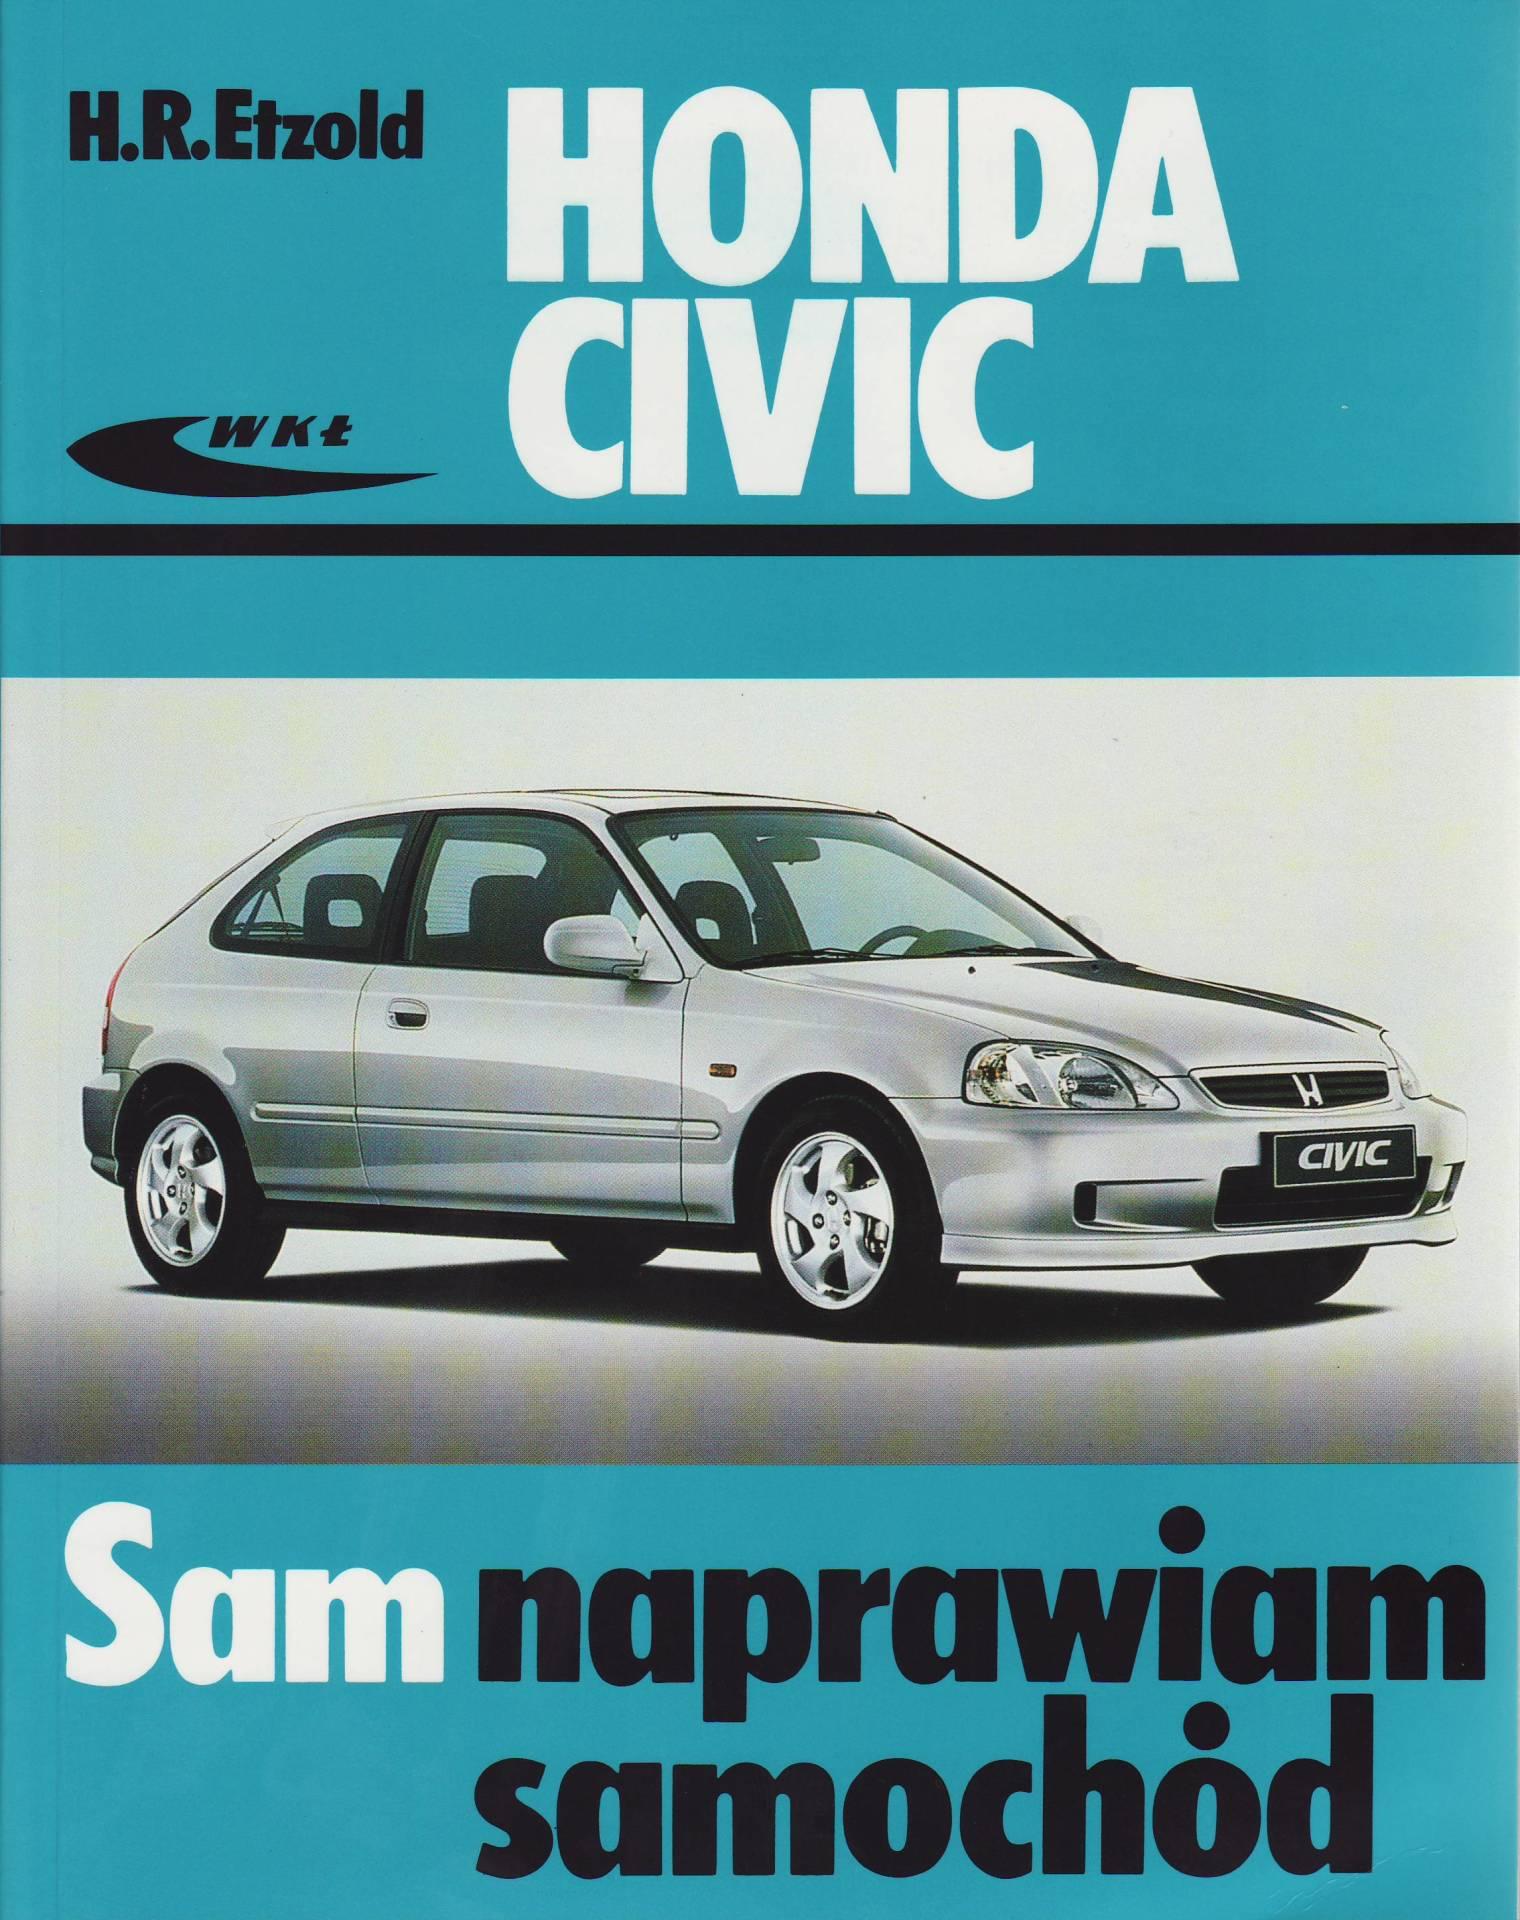 Instrukcje, Serwisówki - Honda Civic [Archiwum] - Forum Stowarzyszenia Civic Klub Polska